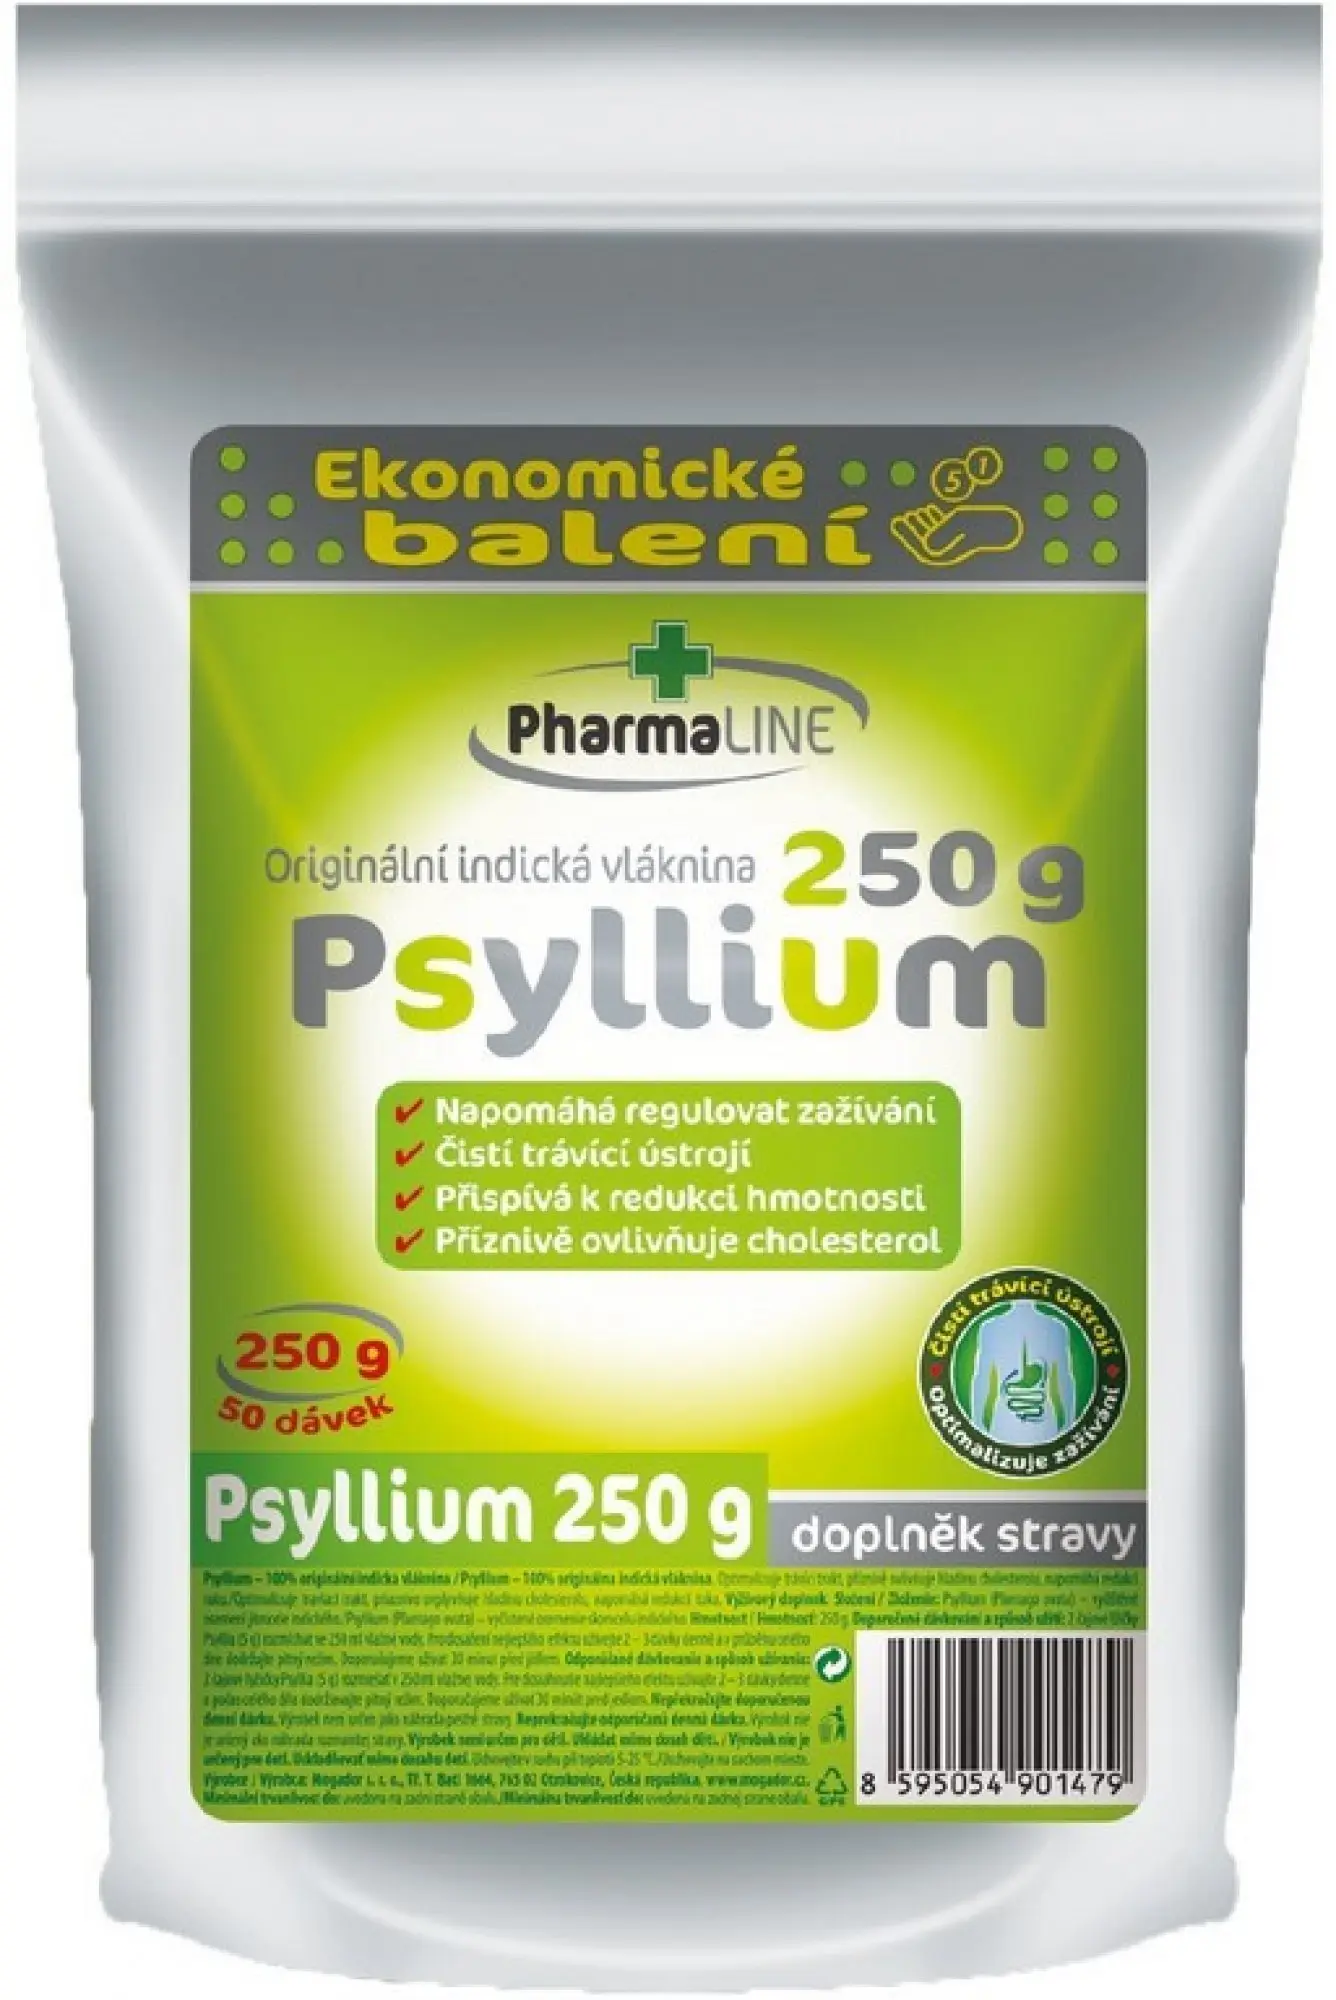 PharmaLINE Psyllium vláknina ekonomické balení 250 g